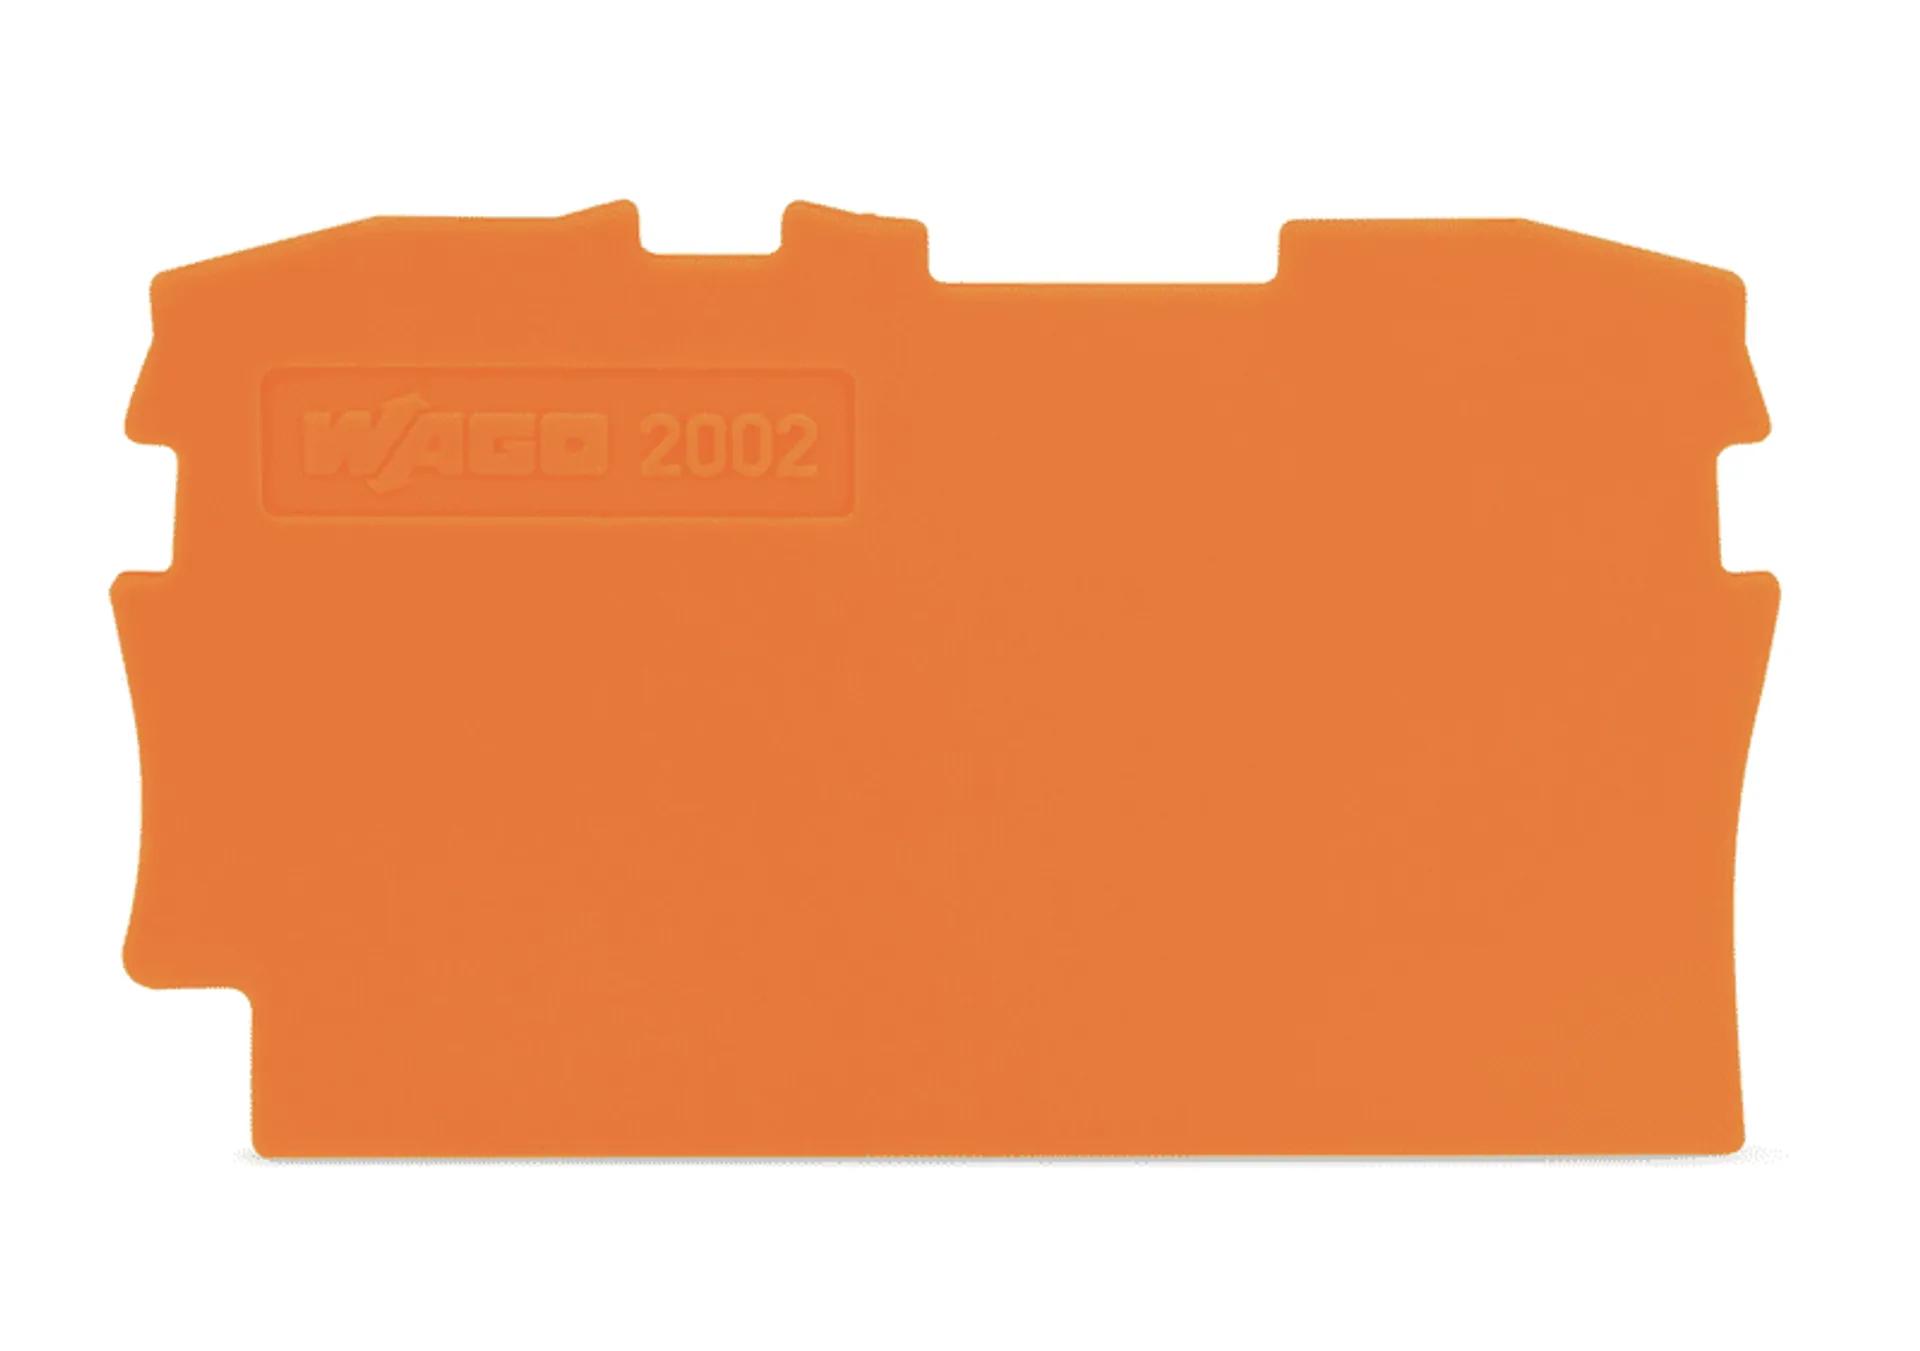 2002-1292